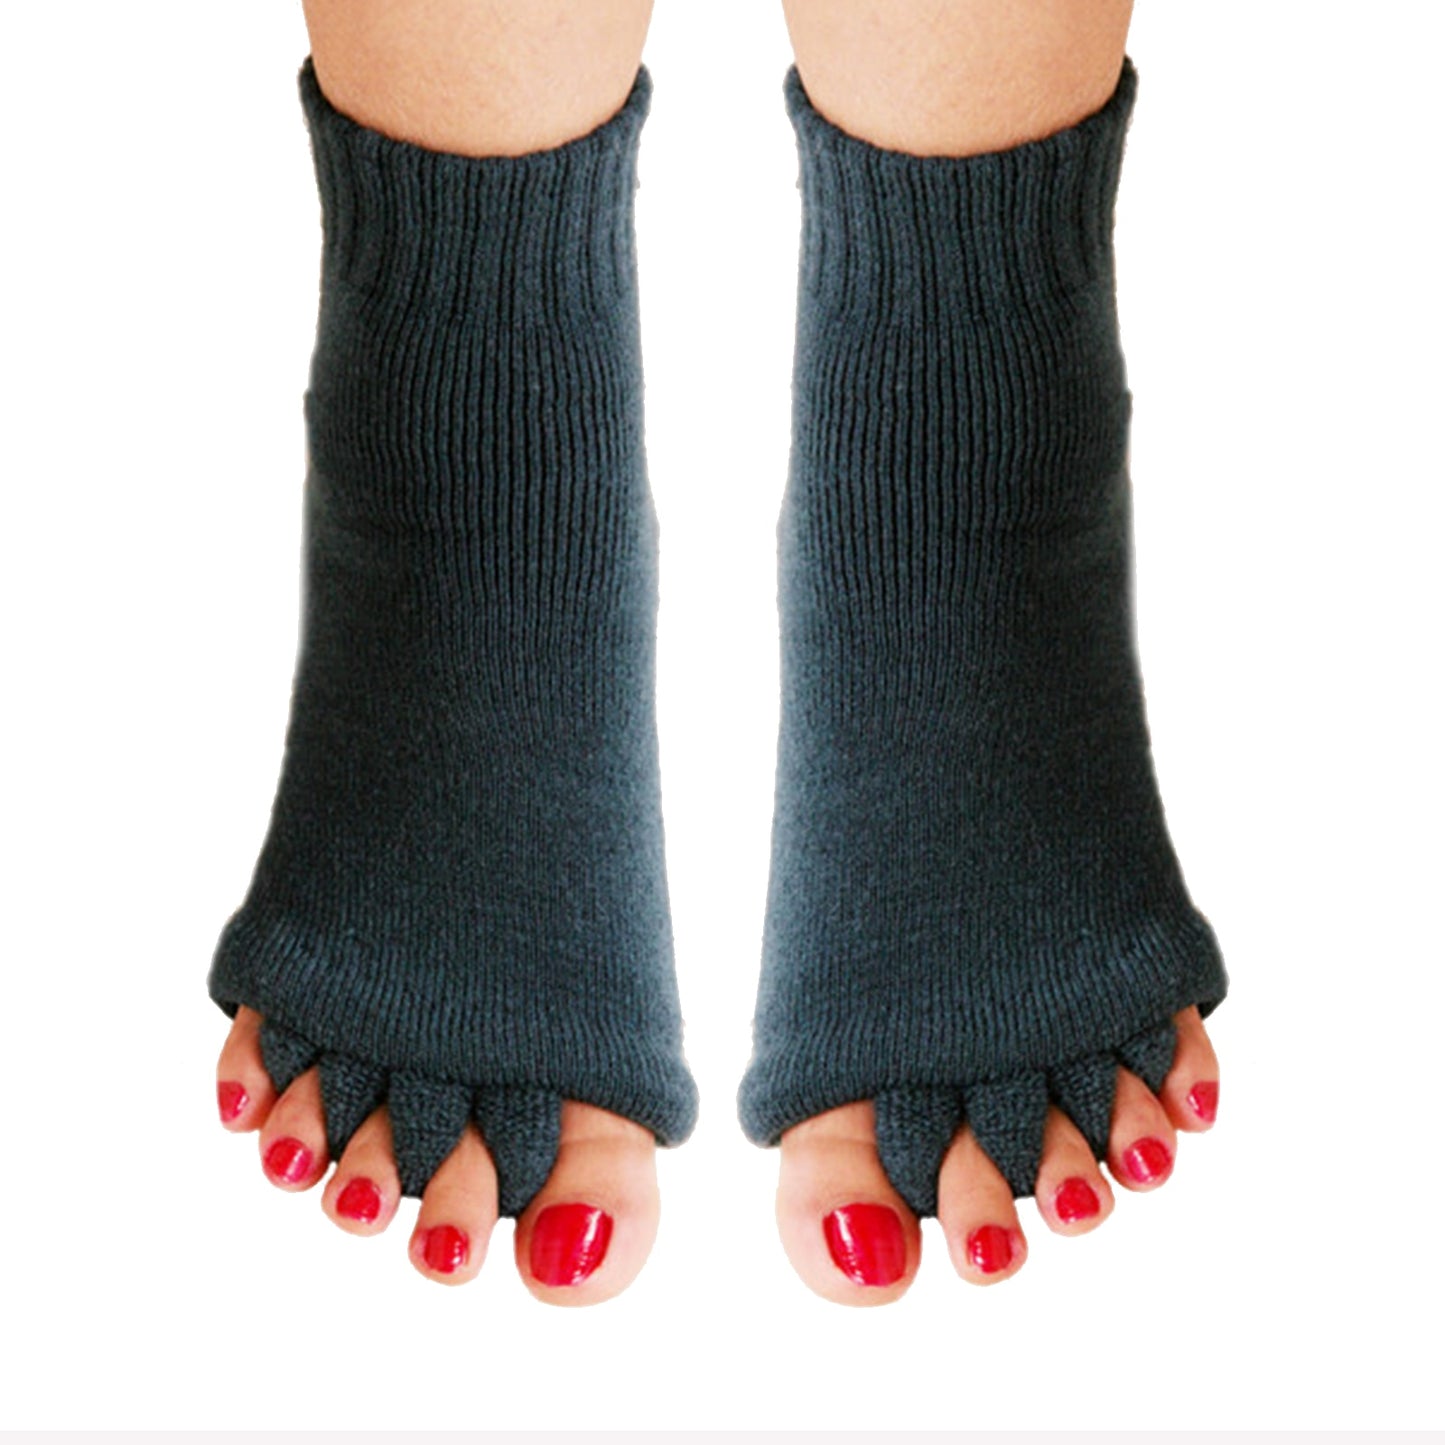 Happy Socks - Nie wieder Fuß Beschwerden!